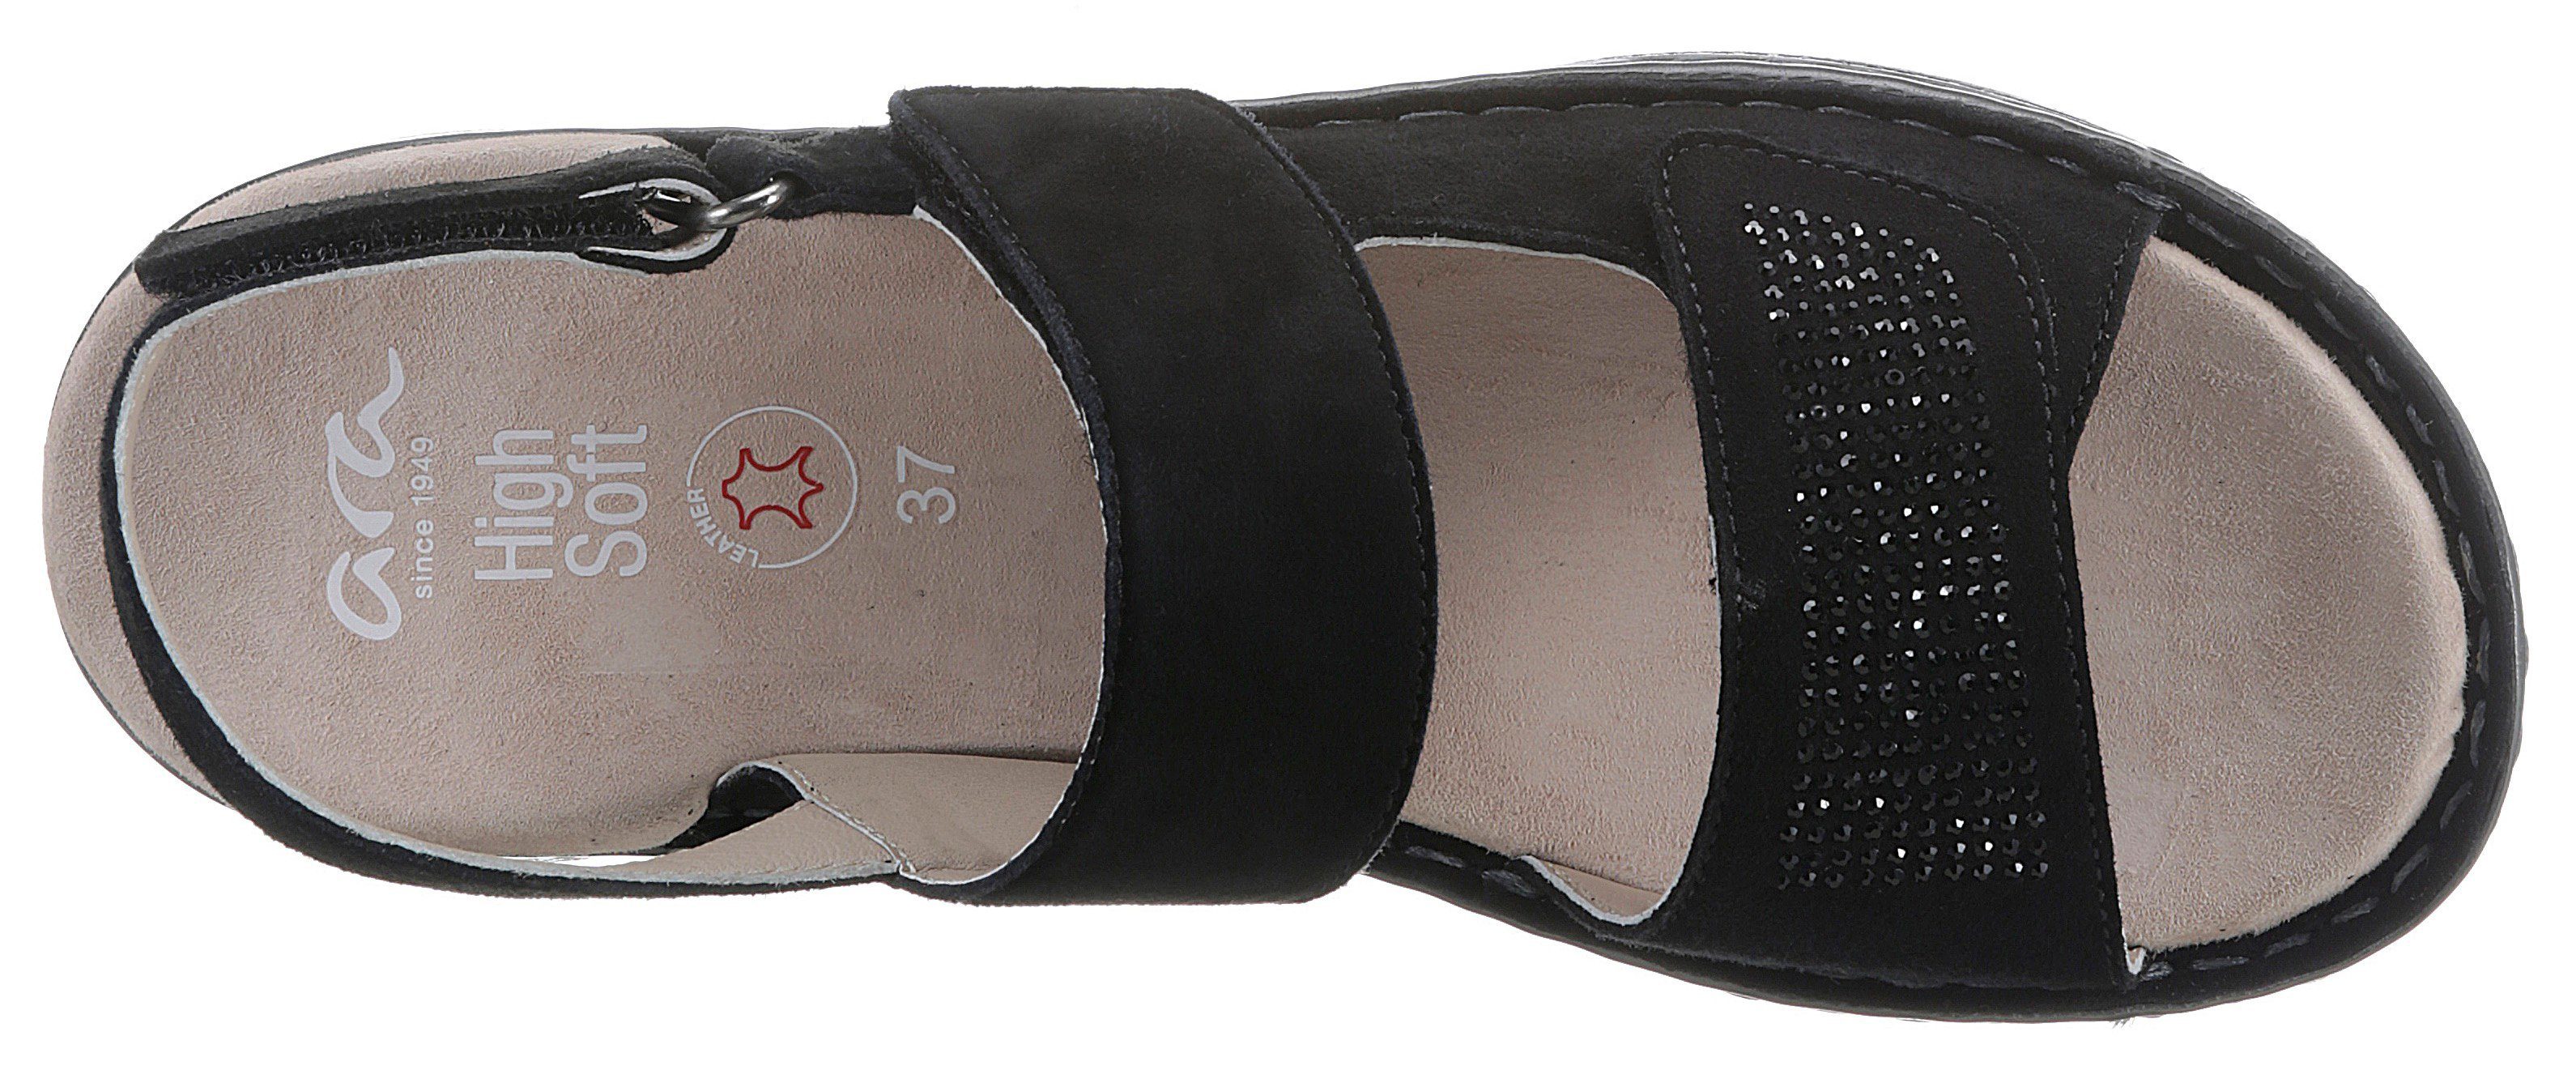 048054 Ara HAWAII bequemer Weite Sandalette in G schwarz